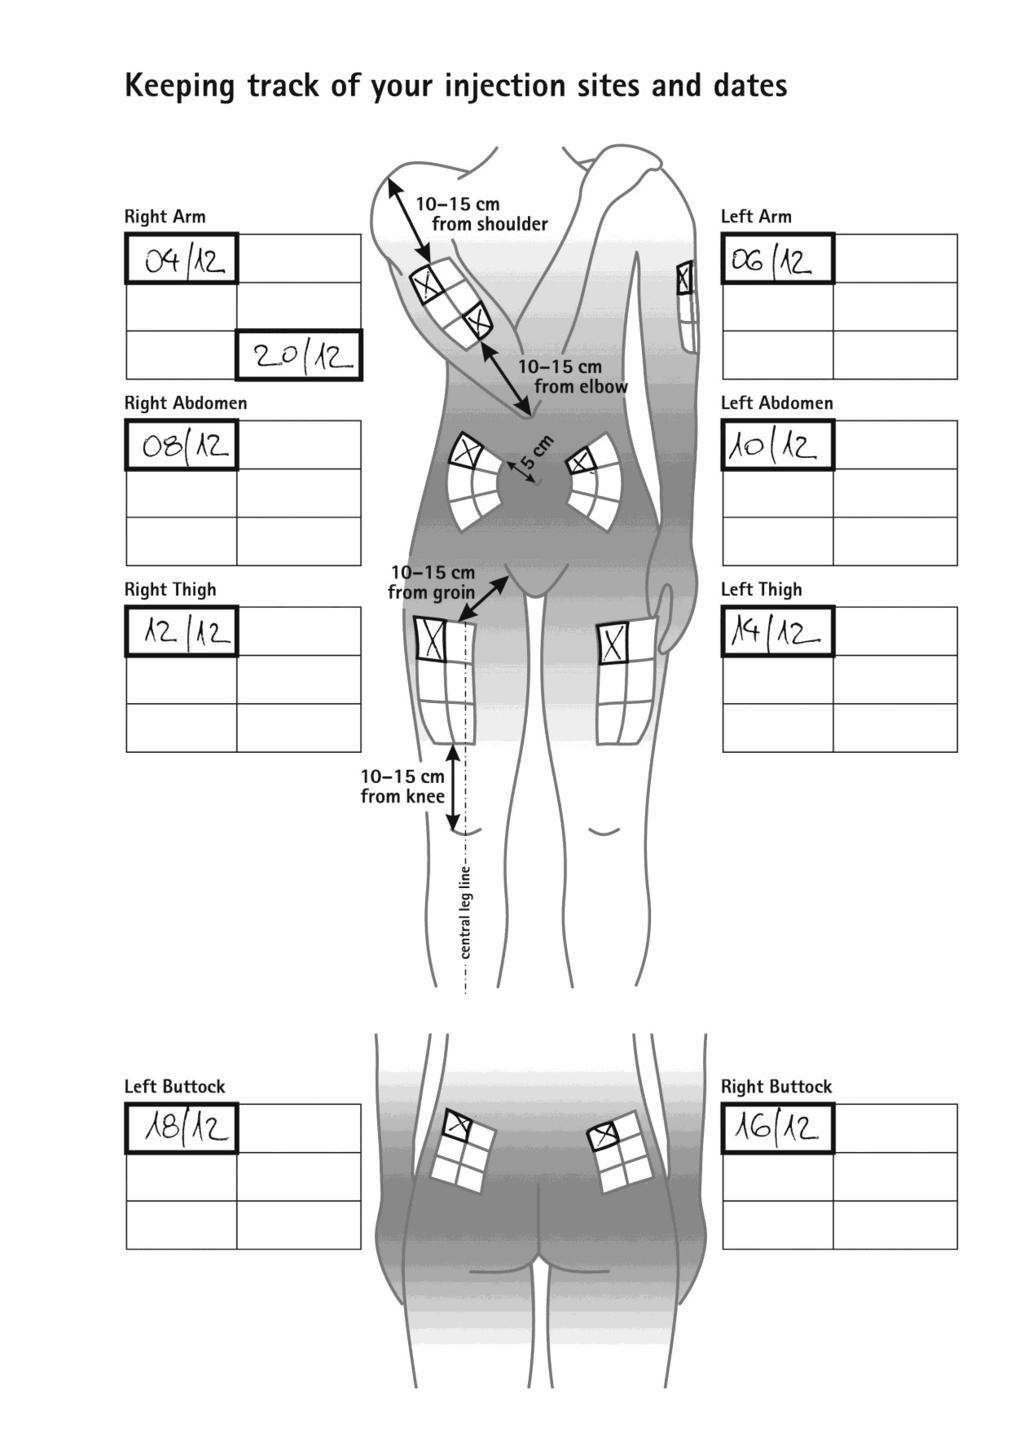 срединна линия на крака ПРИМЕРНА МЕДИЦИНСКА КАРТА: Отбелязване на местата и датите на инжектиране Дясна ръка 10-15 cm от рамото Лява ръка Дясна коремна